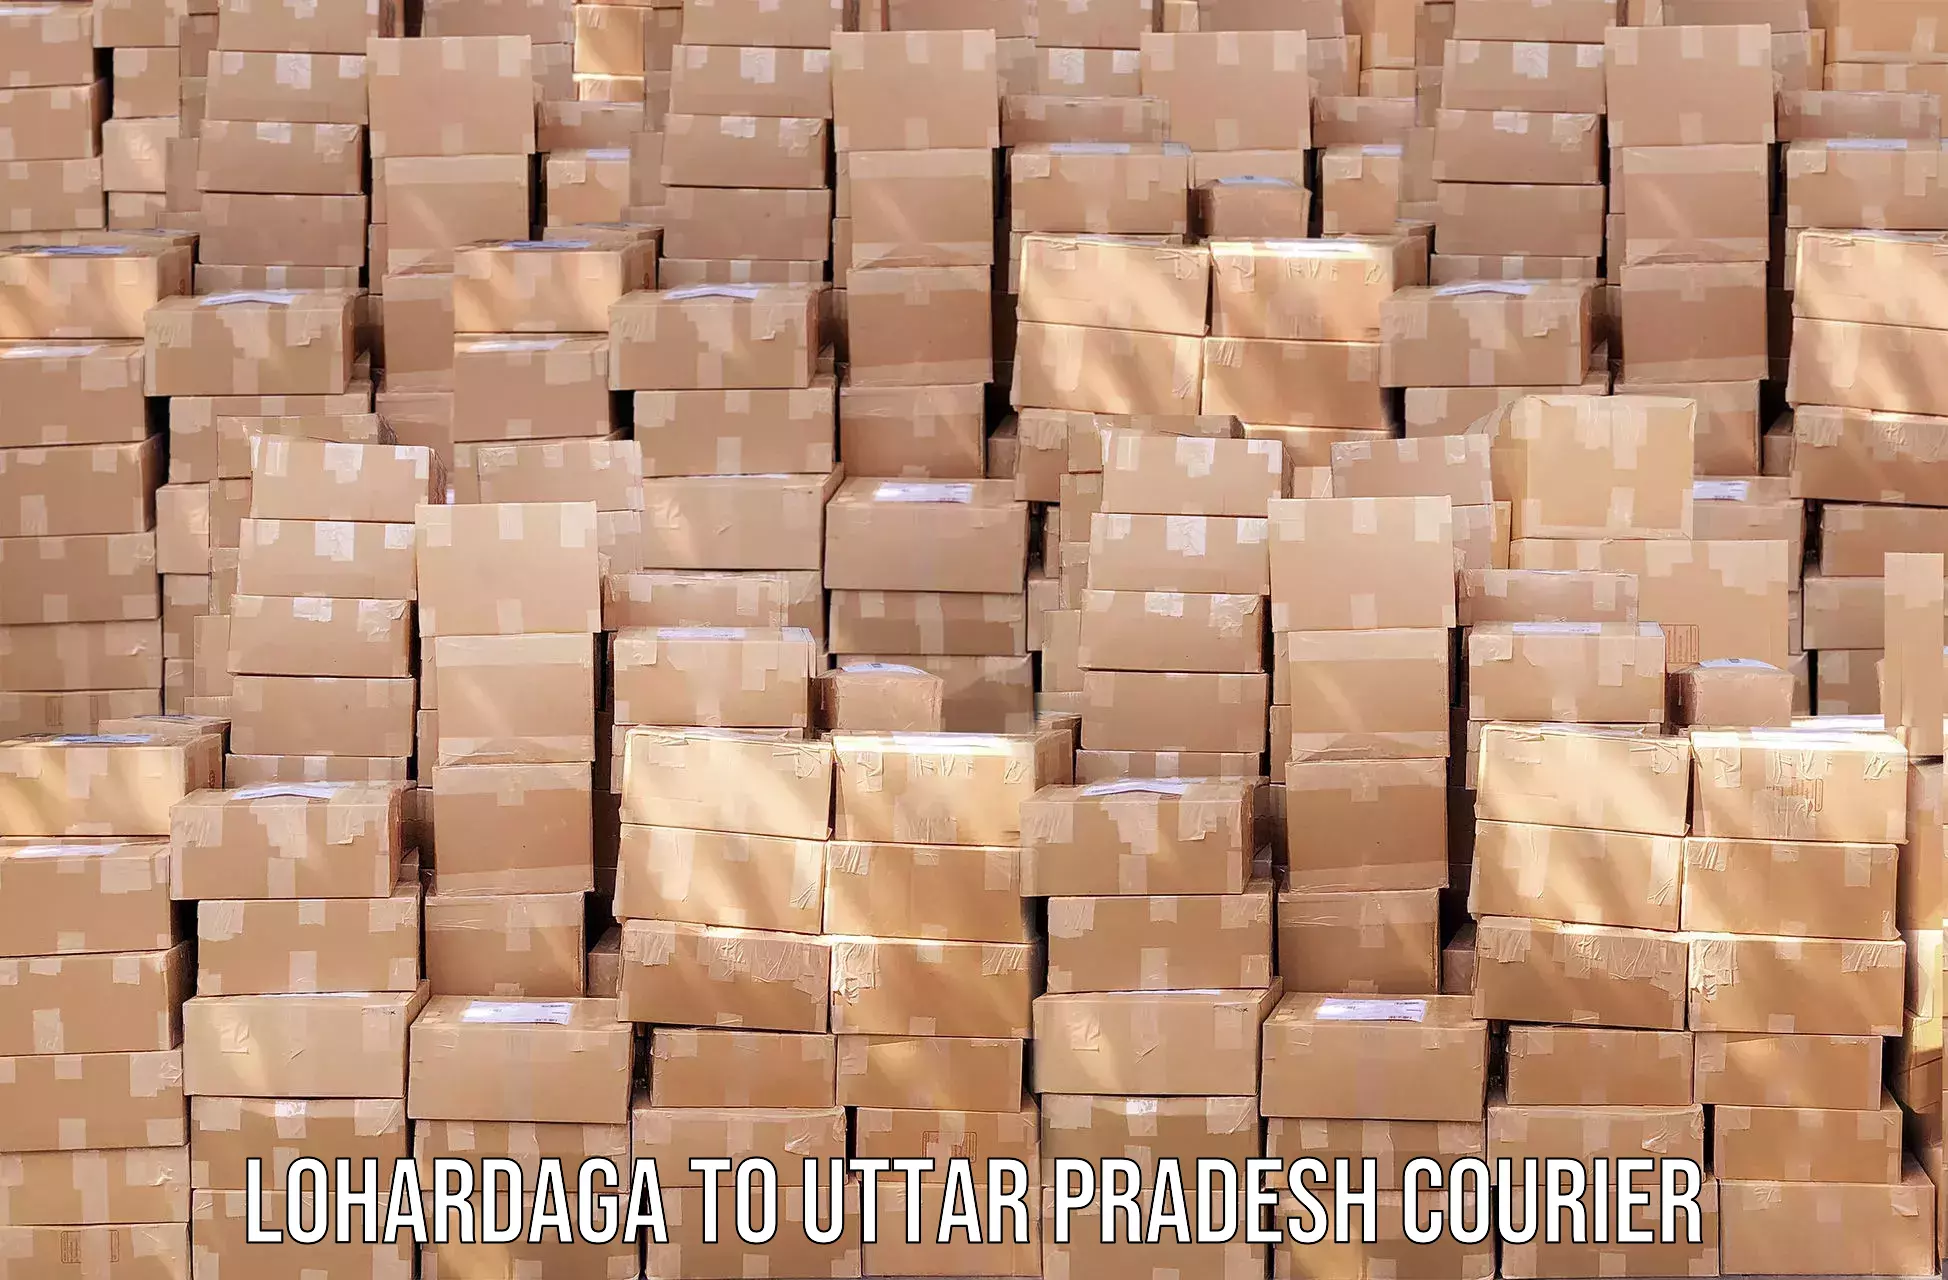 High-priority parcel service in Lohardaga to Uttar Pradesh